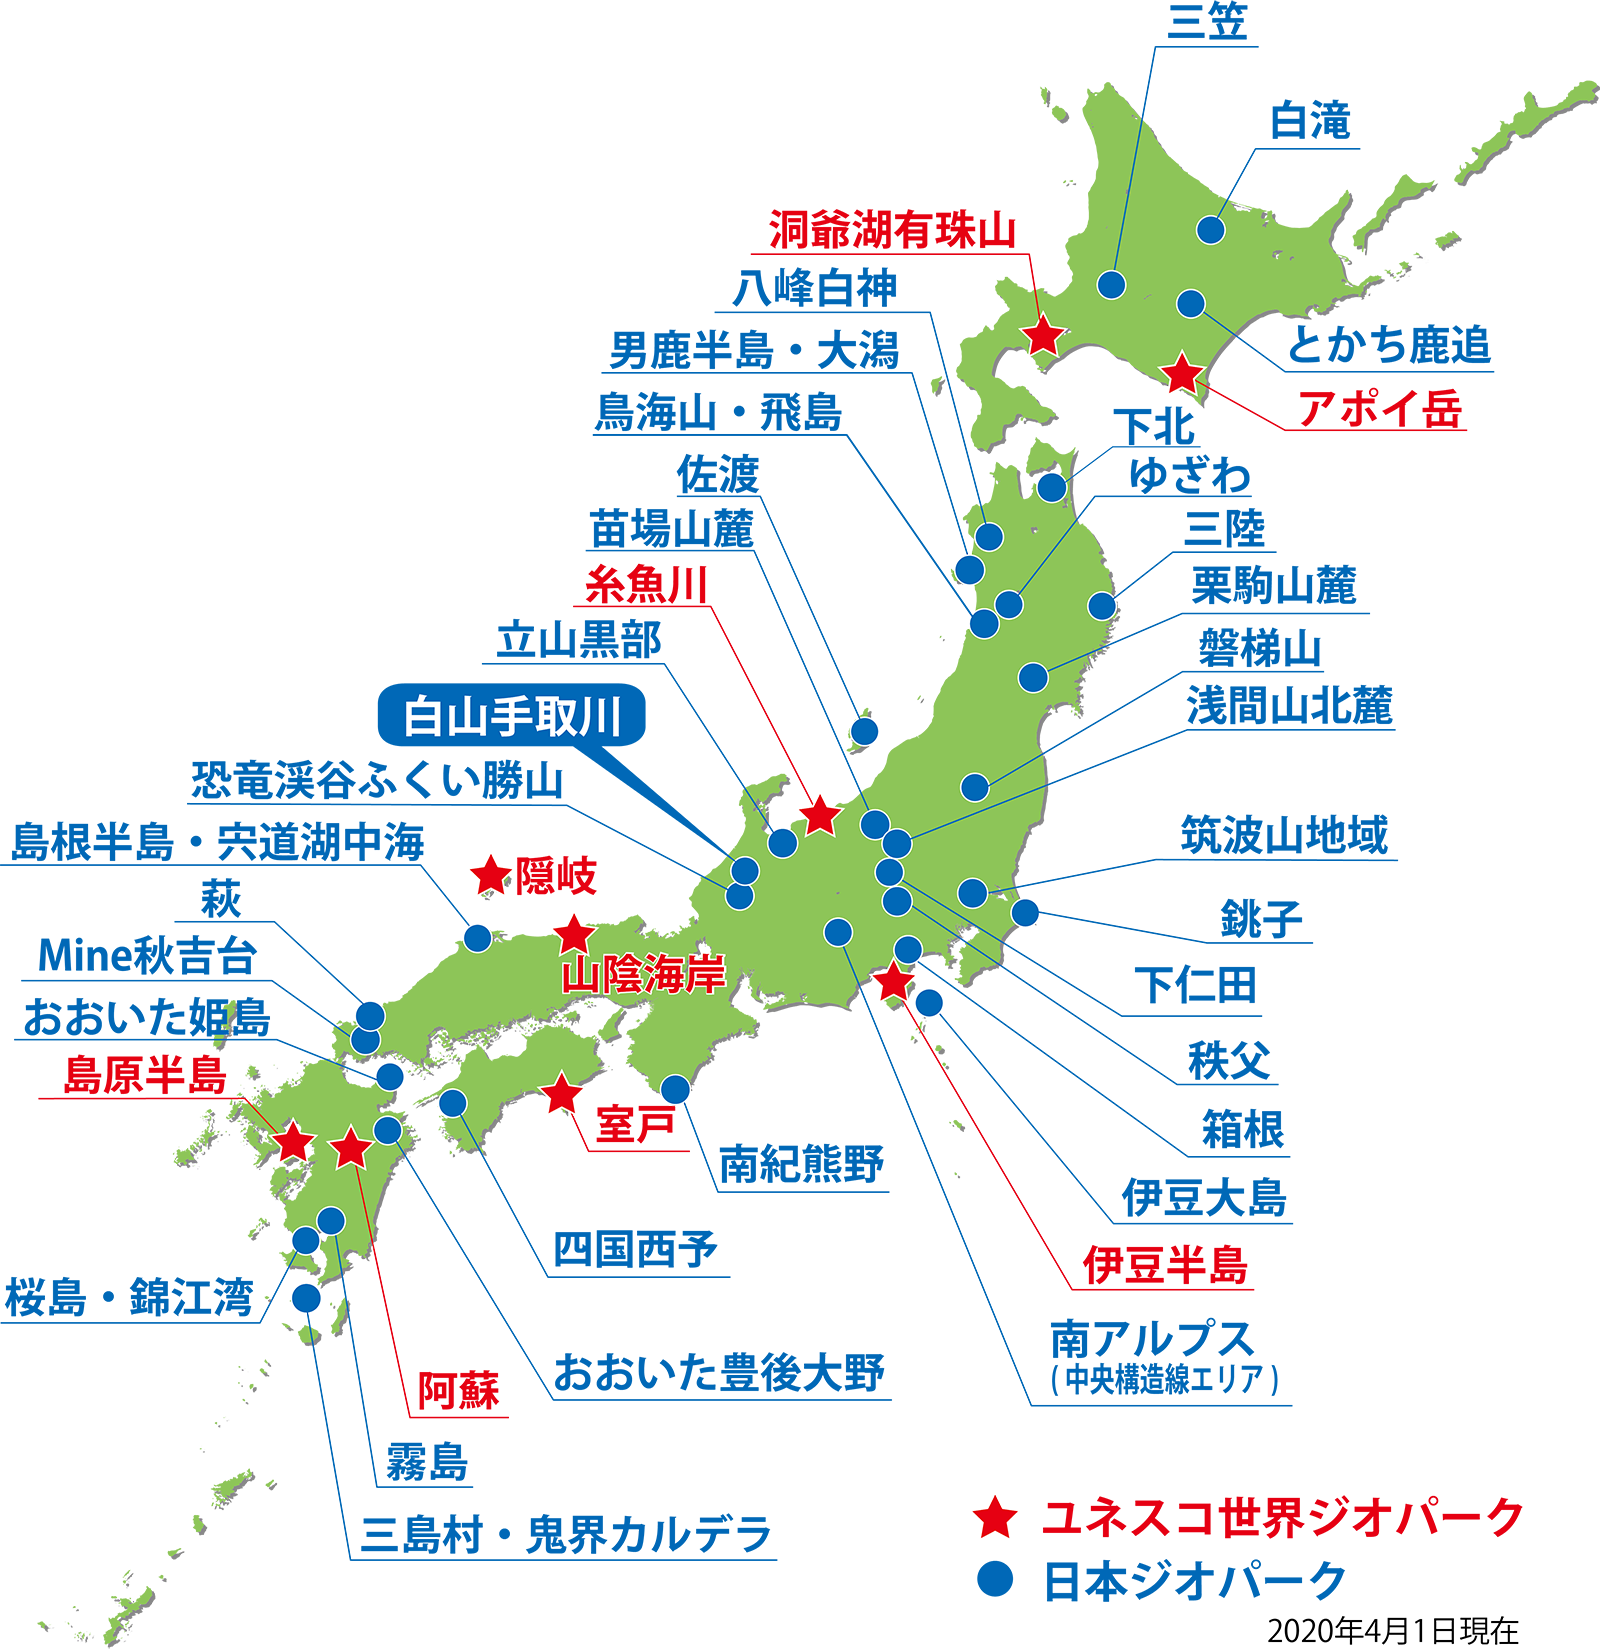 日本ジオパークネットワーク